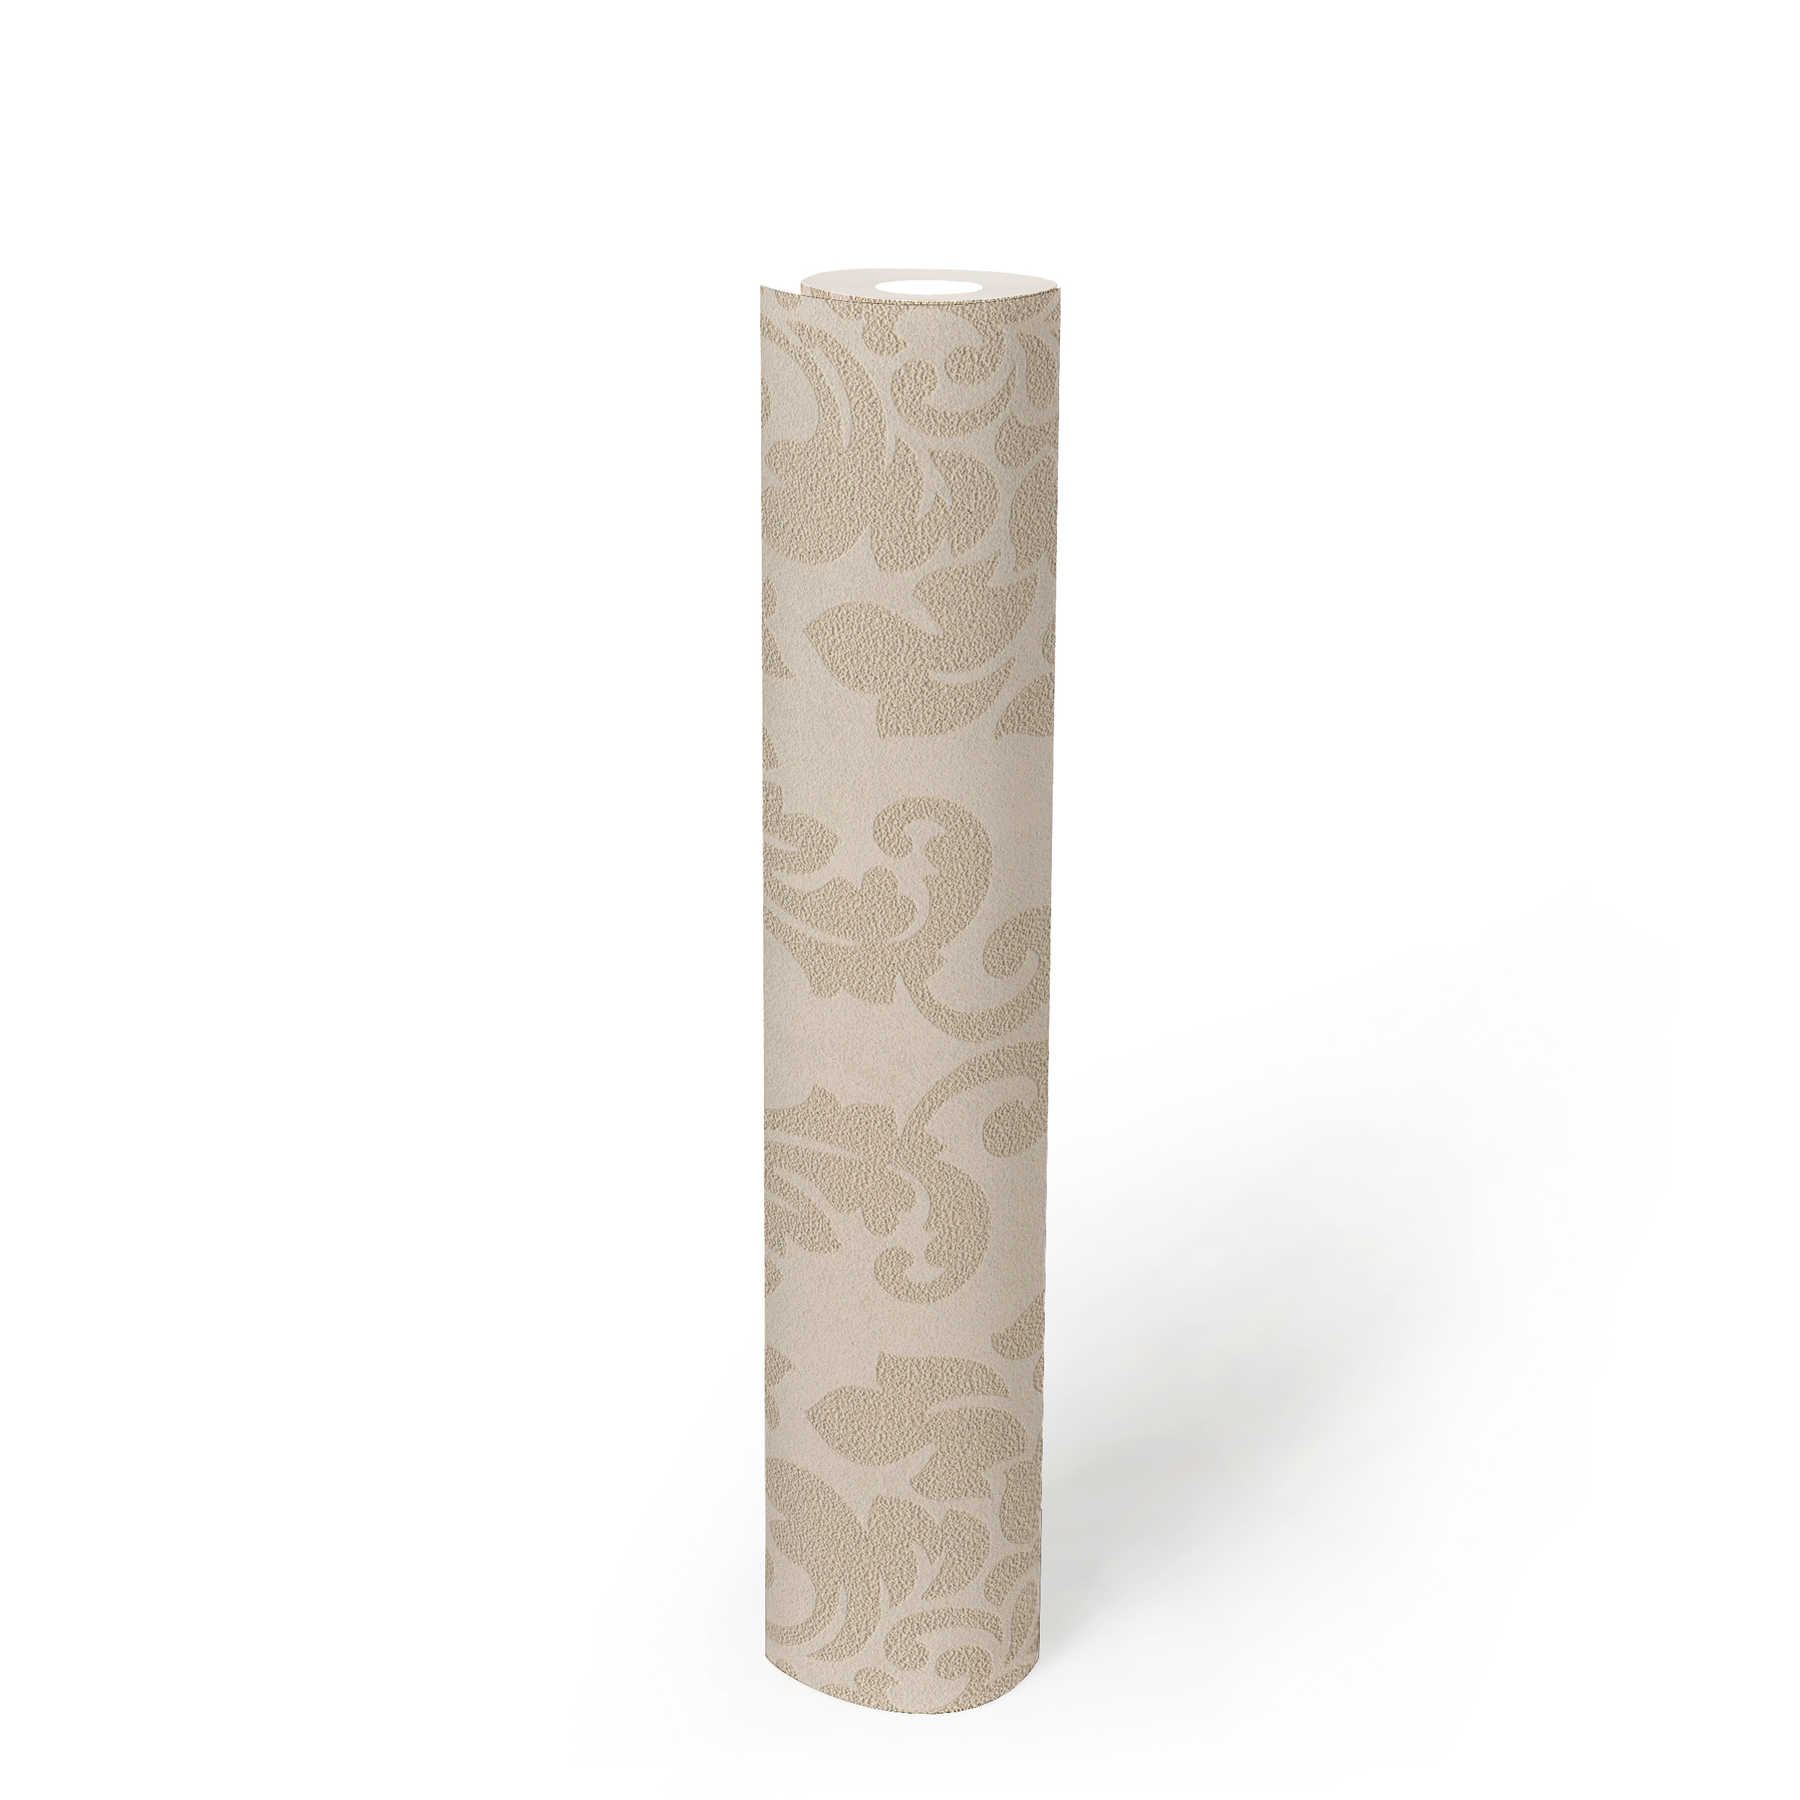             Papier peint ornemental floral avec effet métallique - beige, crème, or
        